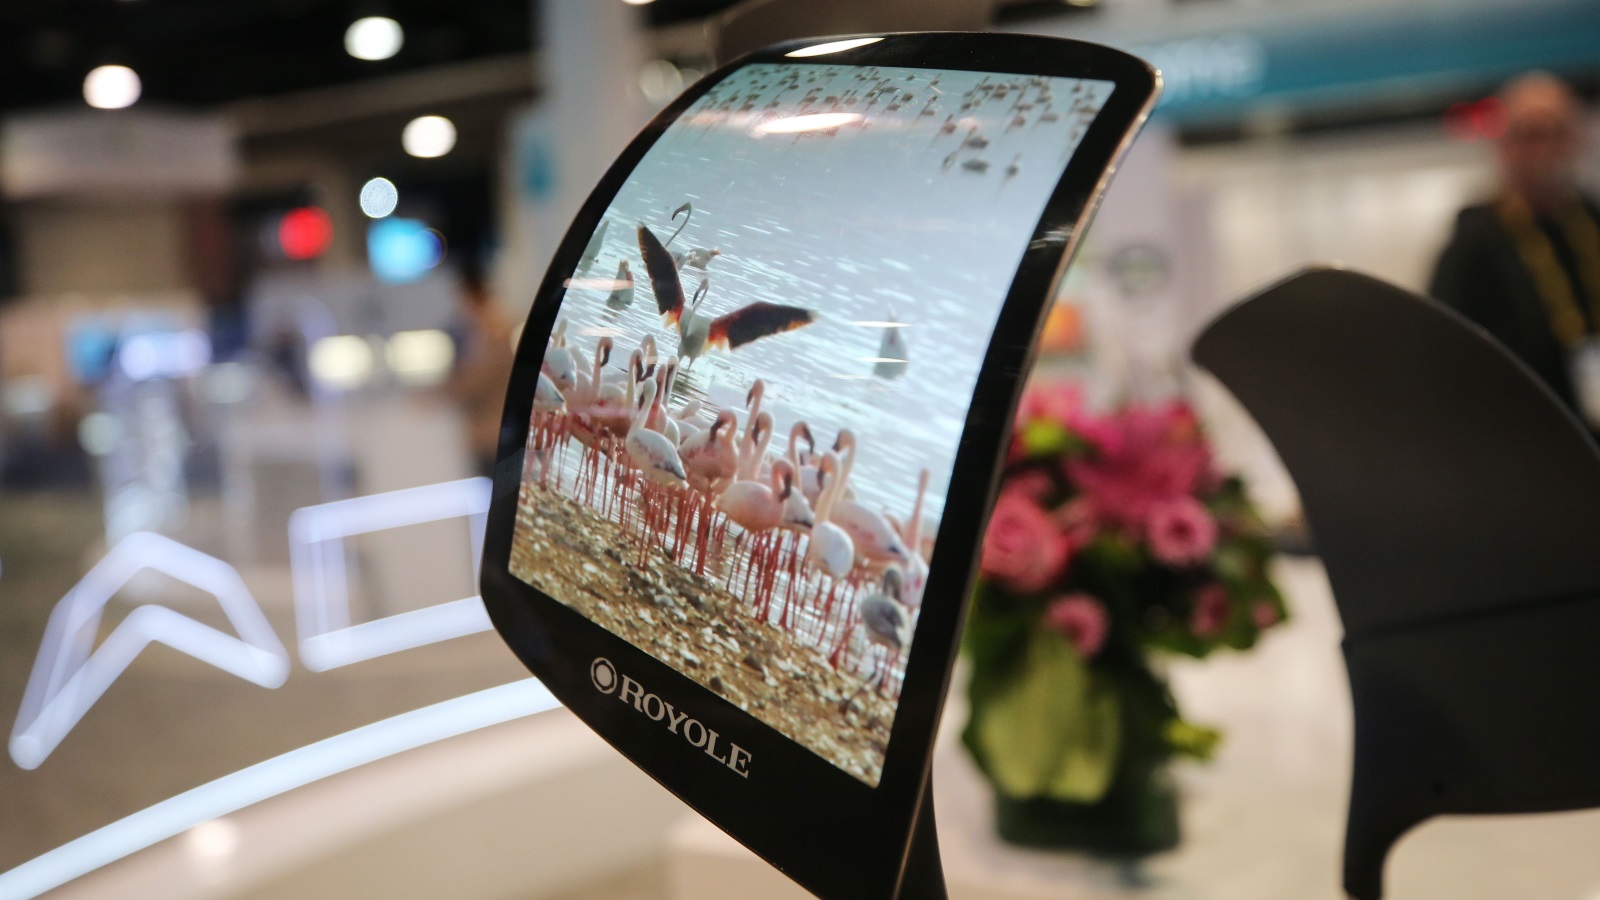 ‪جهاز فليكس باي لشركة رويال يستخدم شاشات عرض مرنة من الجيل الثاني للشركة‬ (الفرنسية)